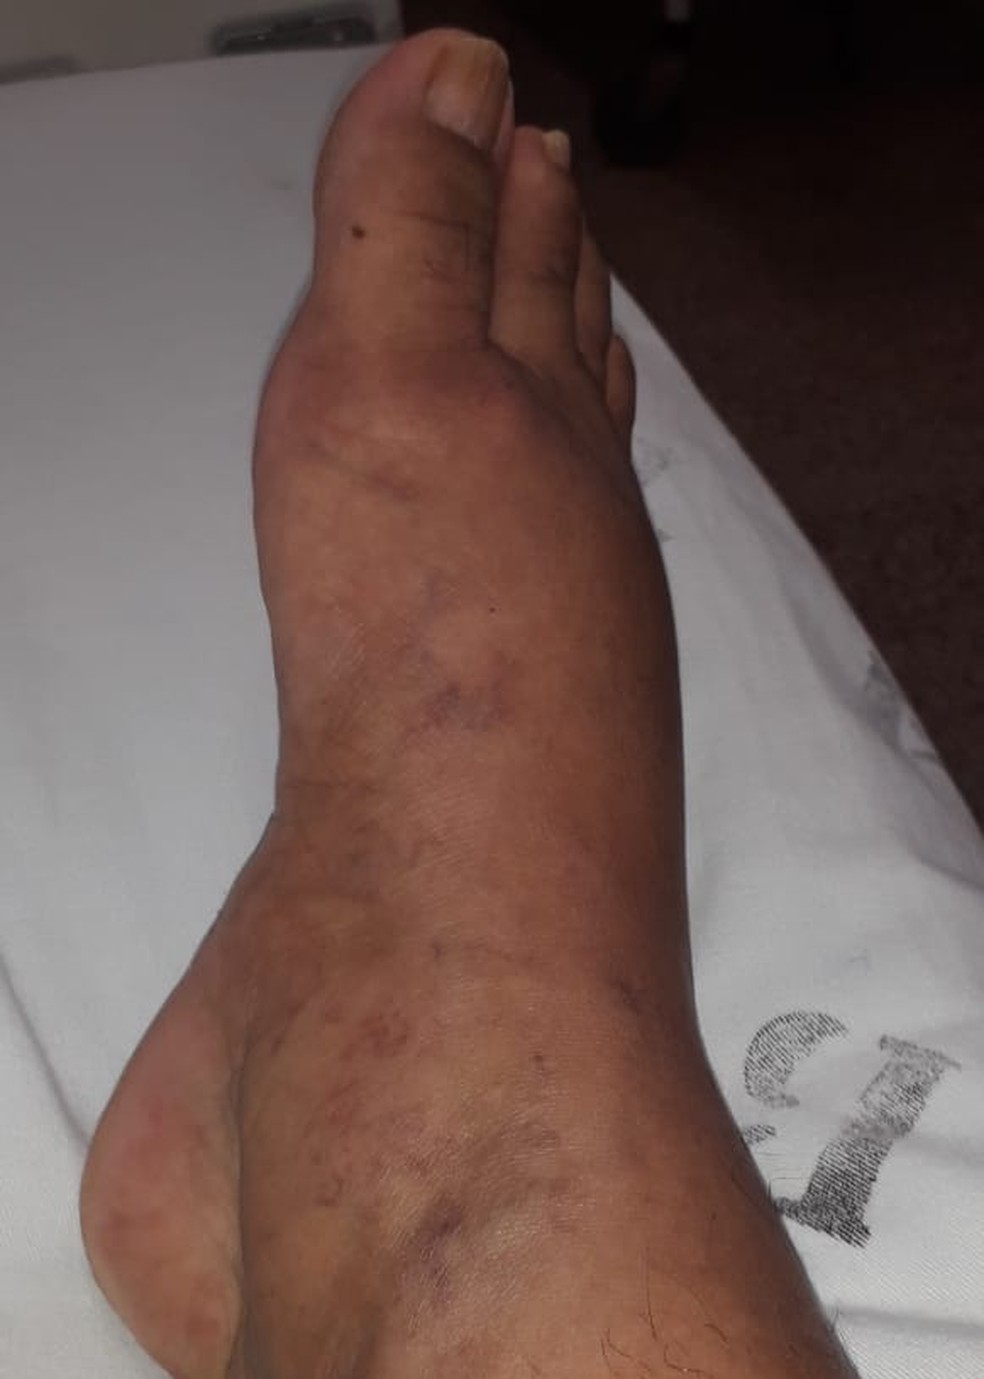 Segundo amigos, Luciene enviou a foto do pé que estava inchado após a administração de medicamento  — Foto: arquivo pessoal